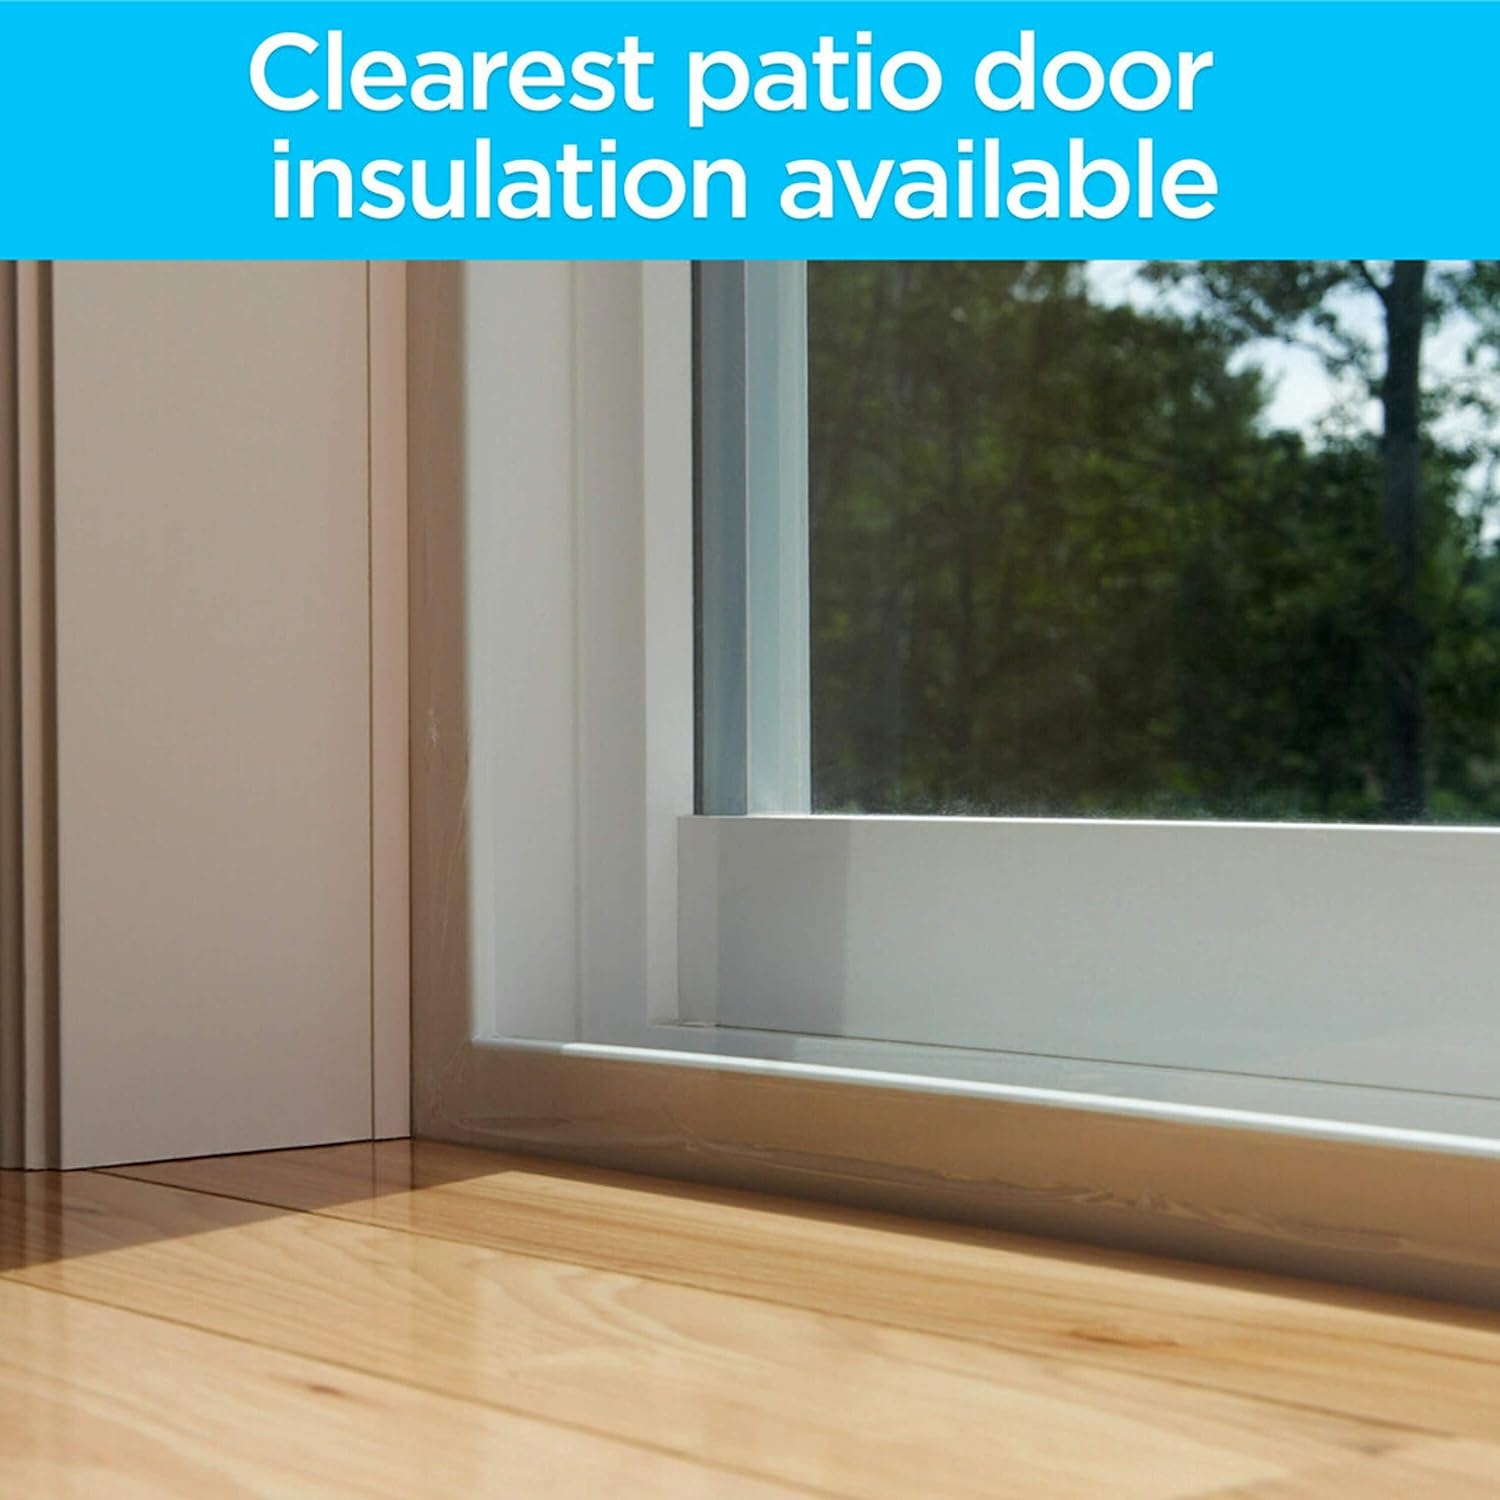 3M Indoor Patio Door Insulator Kit, 1-Patio Door